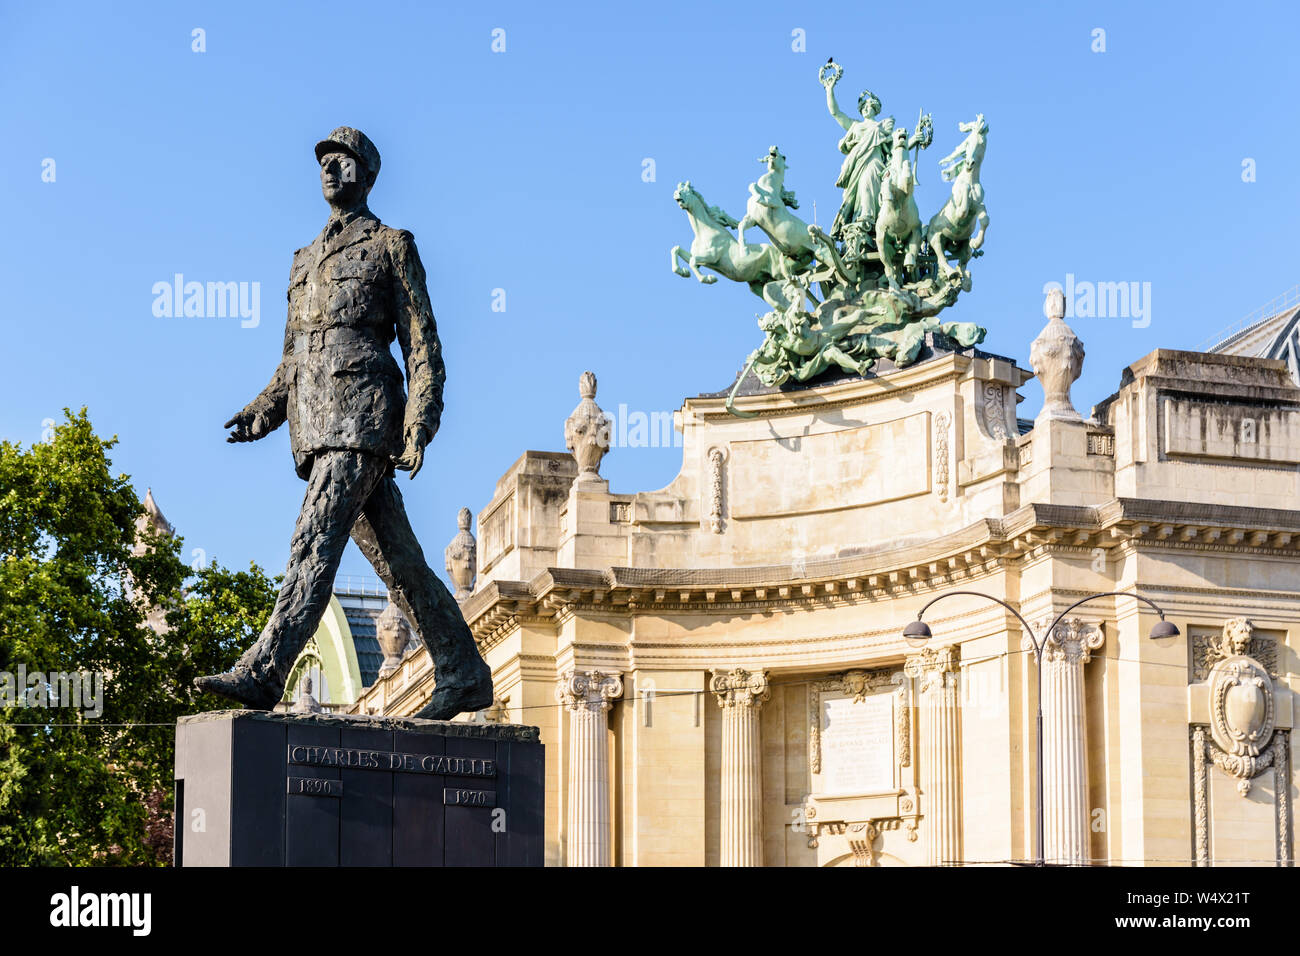 Eine Statue von Charles de Gaulle, der berühmte französische Staatsmann, hat im Jahr 2000 wurden auf der Avenue des Champs-Elysées vor dem Grand Palais installiert. Stockfoto